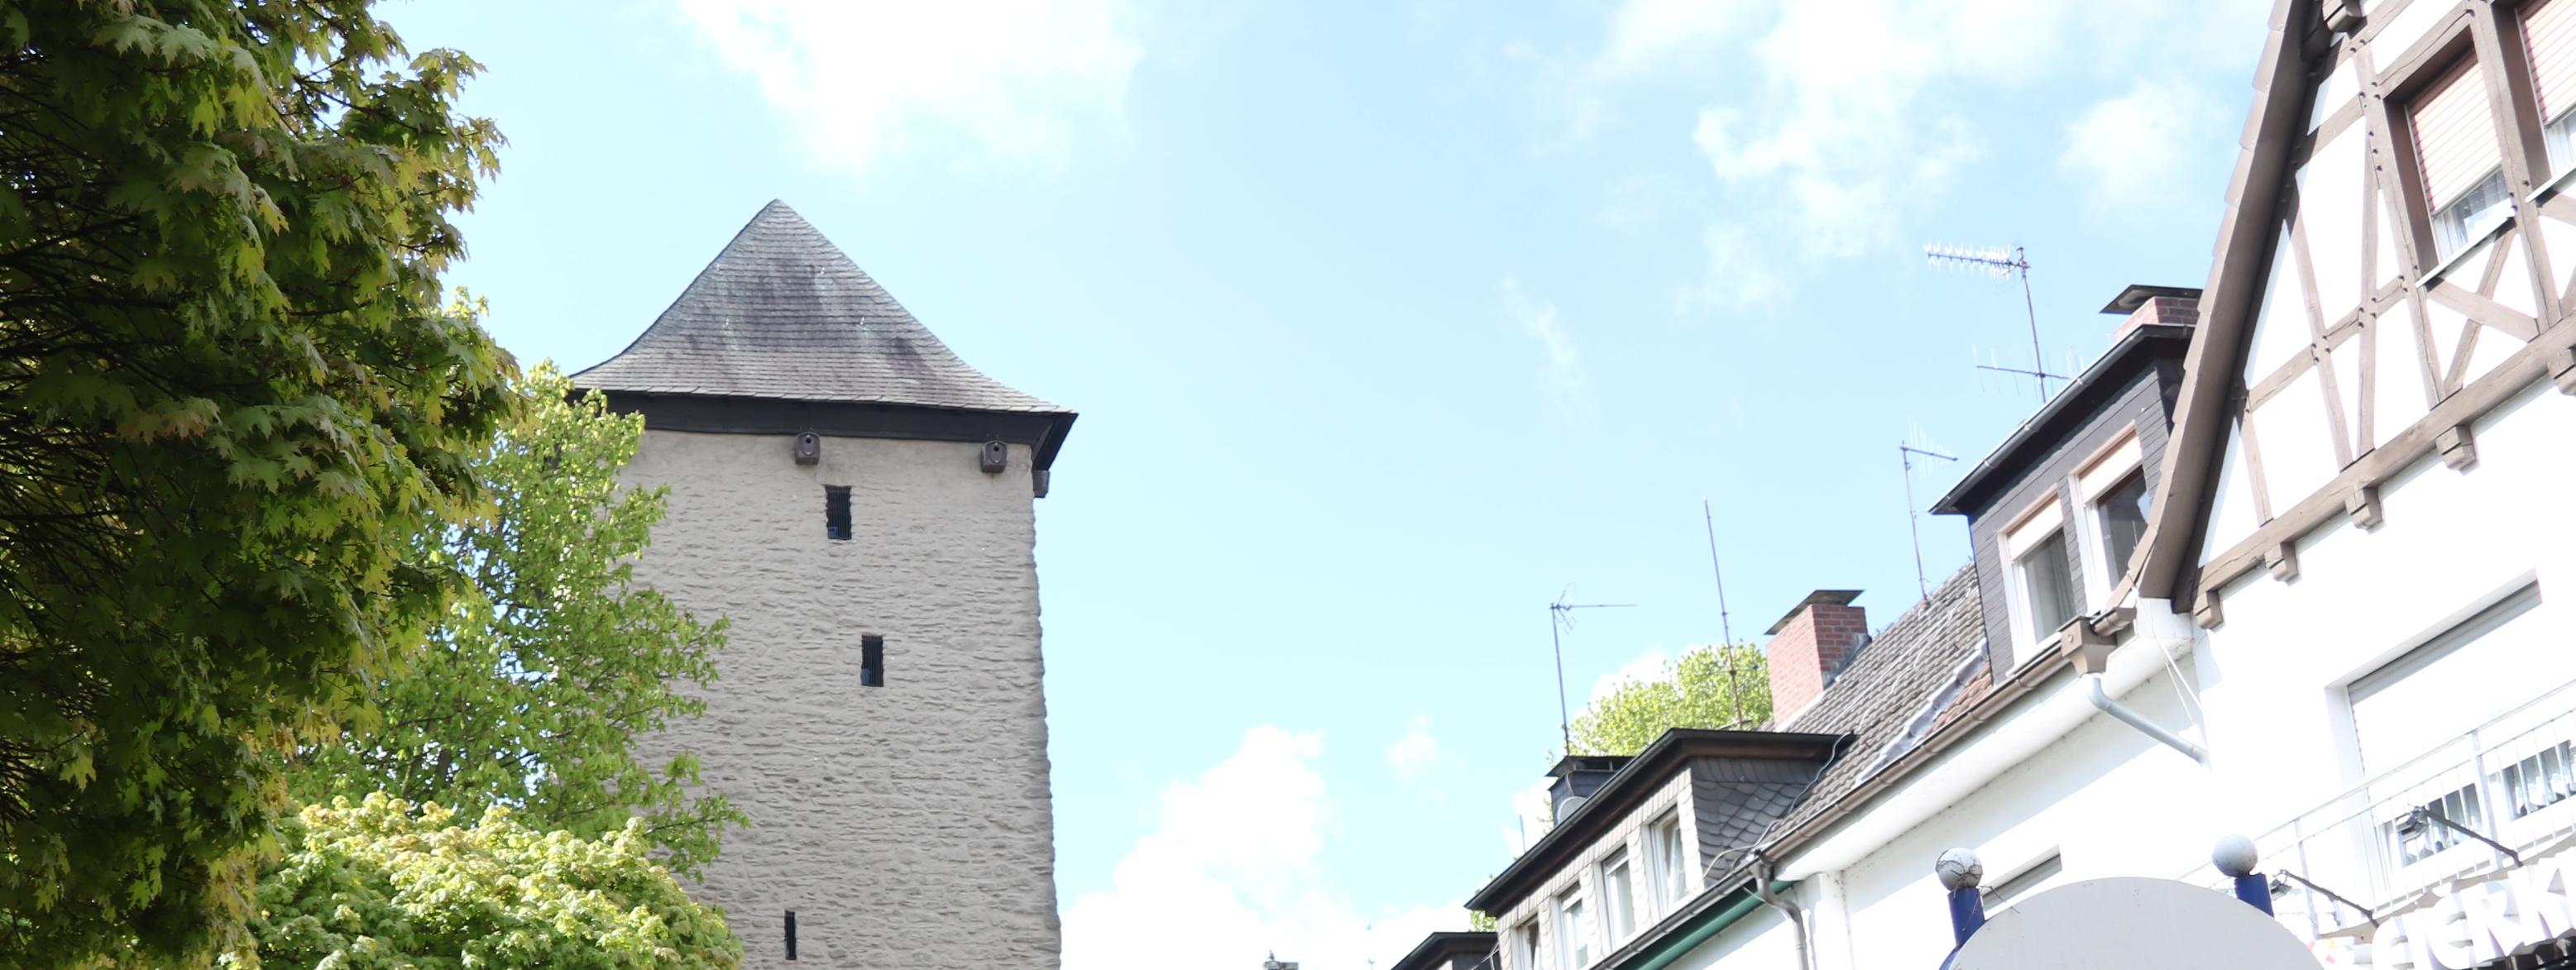 Der Poennigeturm, umringt von Bäumen auf der linken Seite und der Häuserfront der Turmstraße auf der rechten Seite.